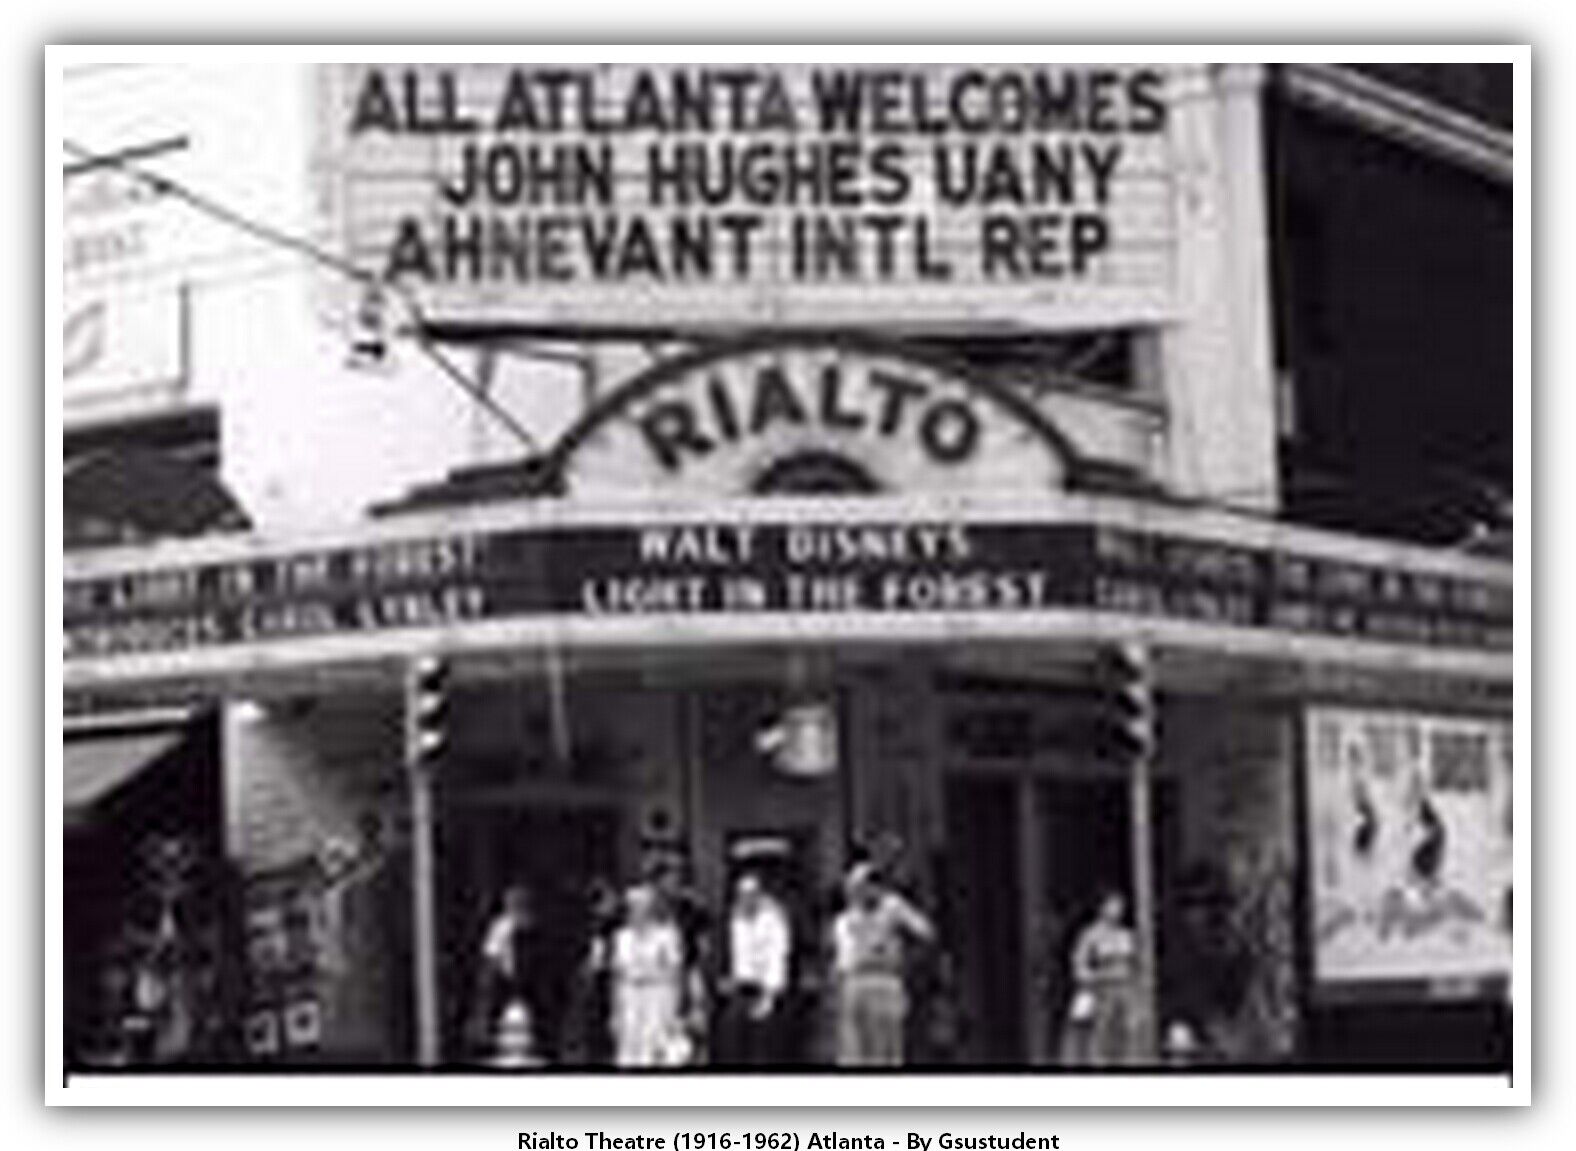 Rialto Theatre (1916-1962) Atlanta Theater Postcard